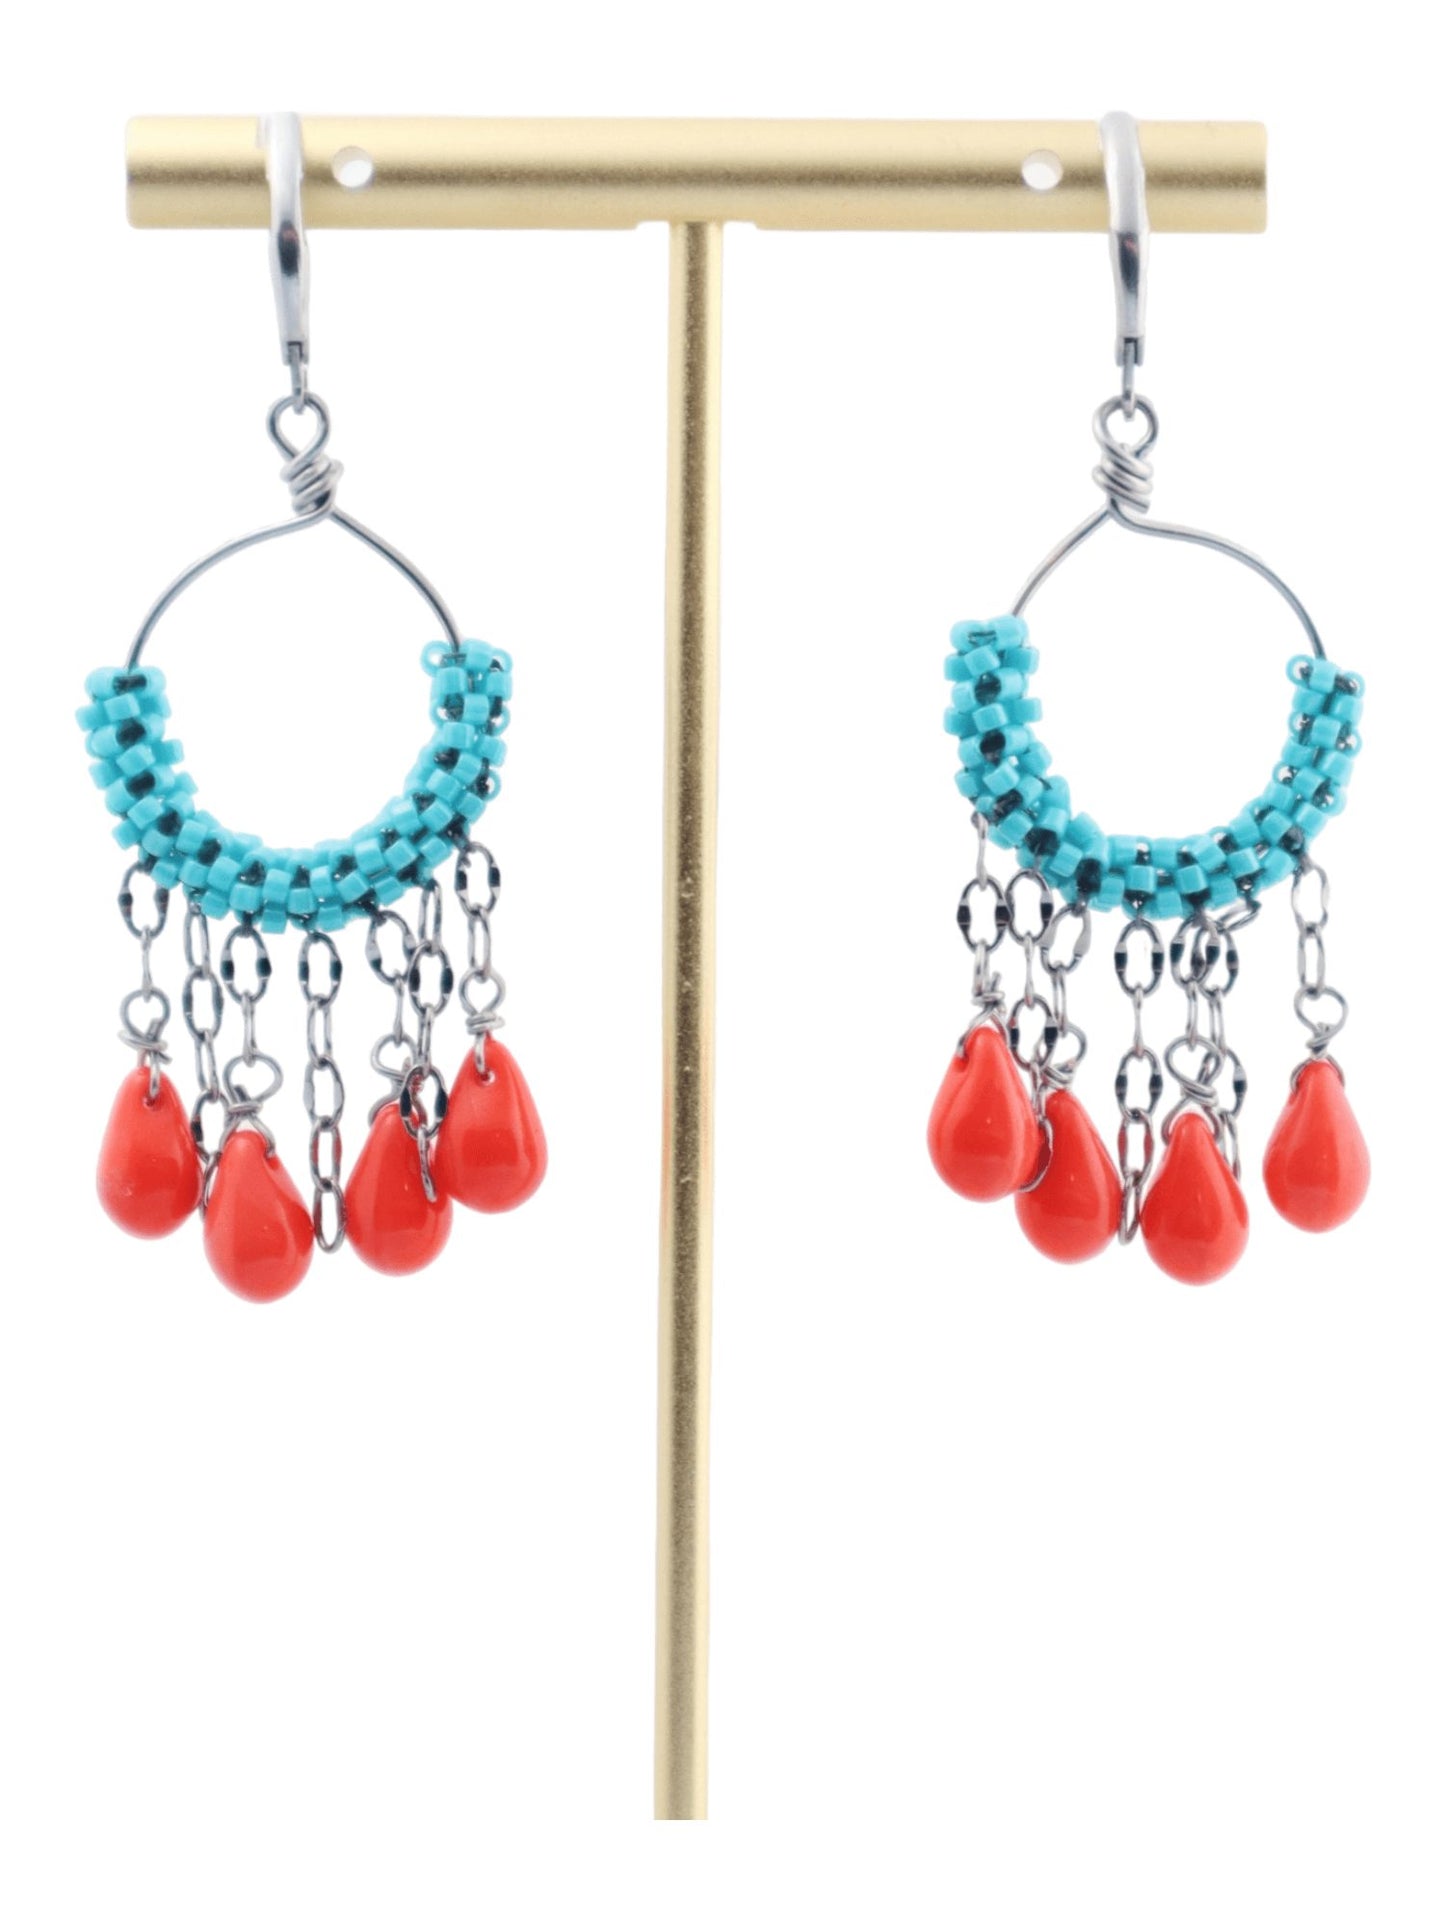 Turquoise Orange Teardrop Dangle Hoop Earrings - Statement Fashion Earrings by Kaleidoscopes And Polka Dots